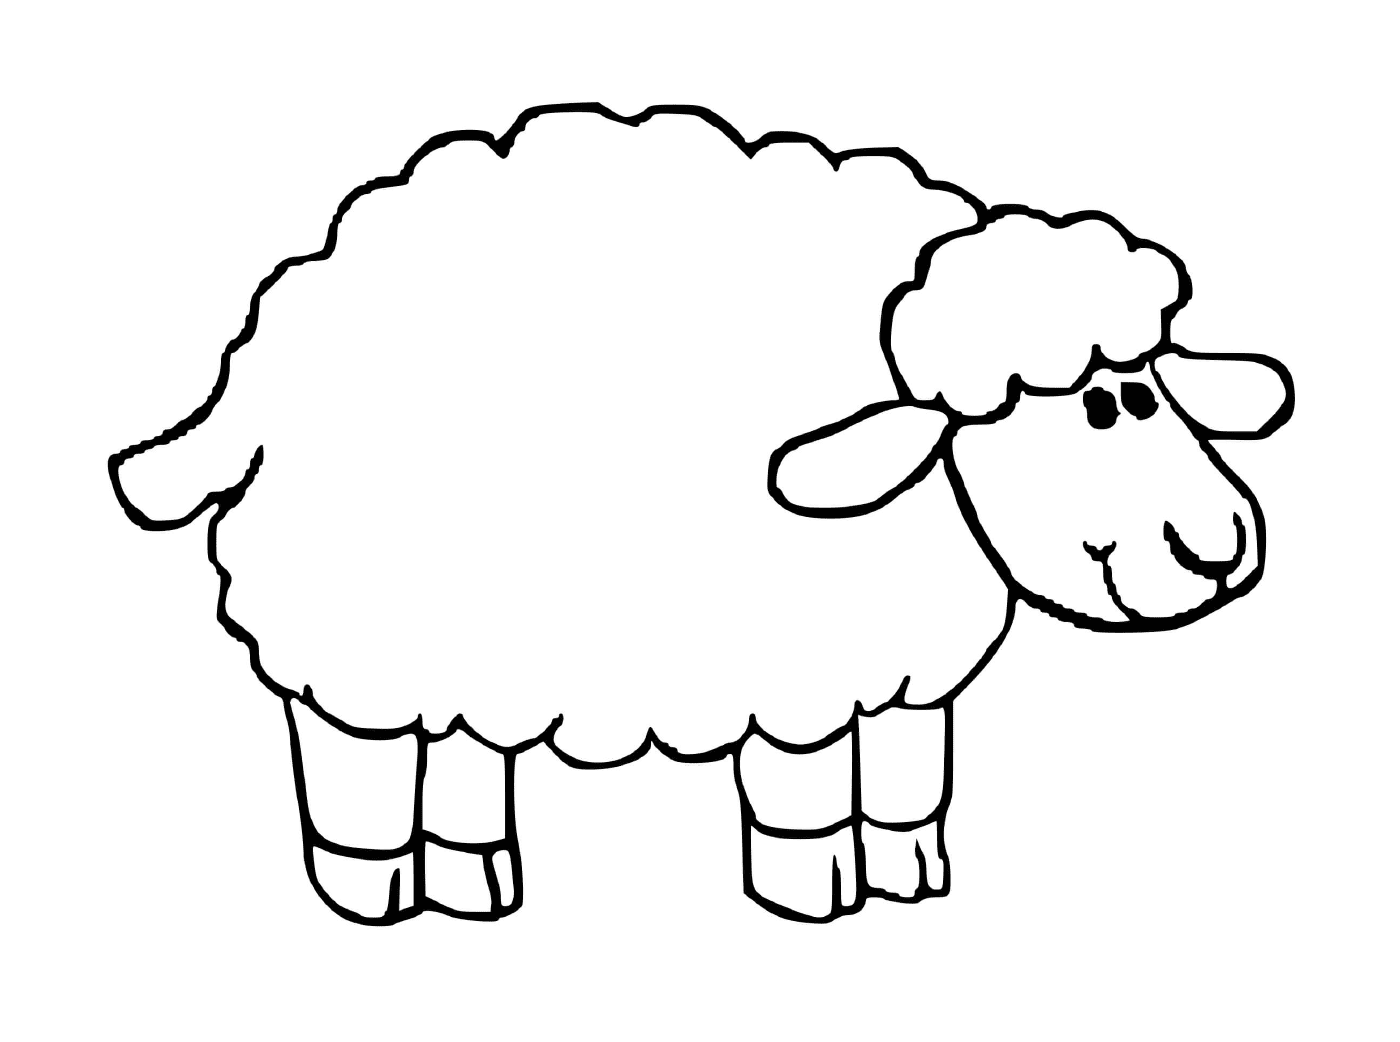  Овцы дружелюбной внешности 